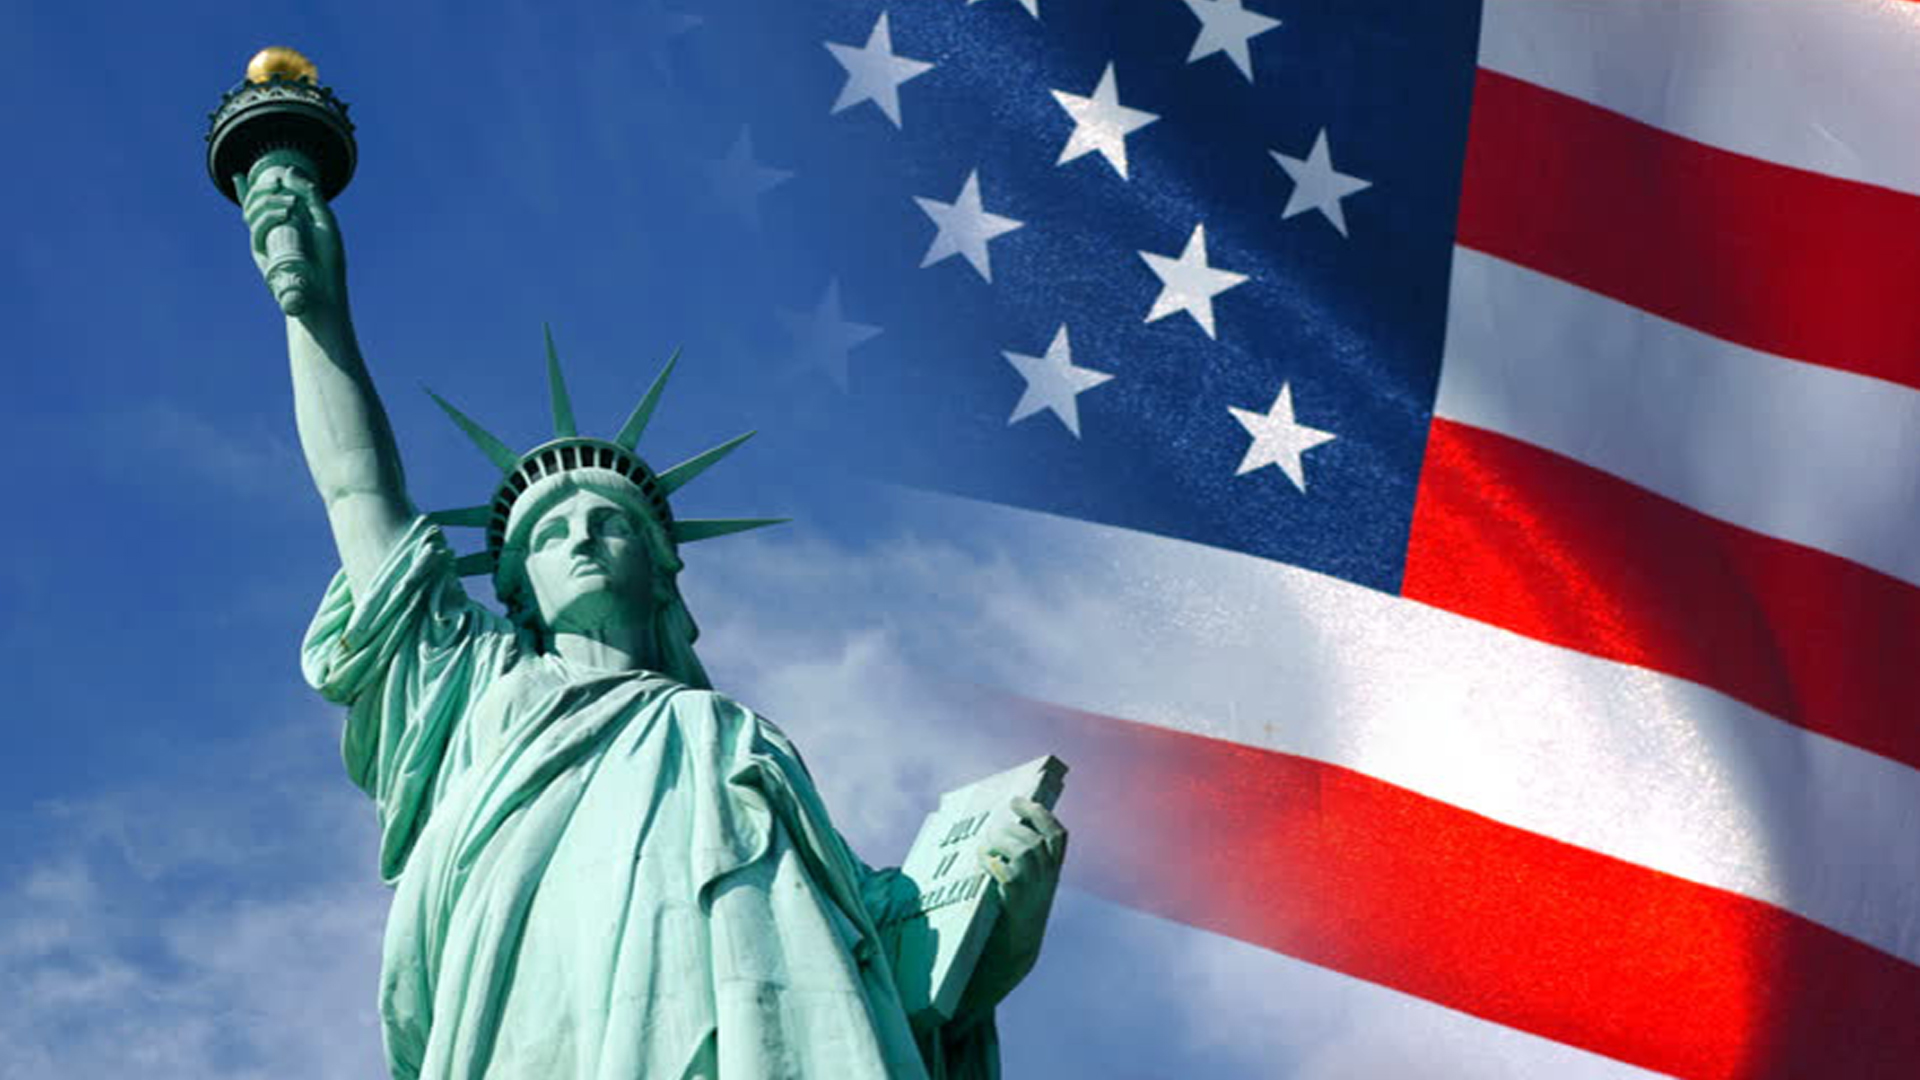 Чем известна страна сша. USA статуя свободы. Страна США. Американский флаг и статуя свободы. США картинки.